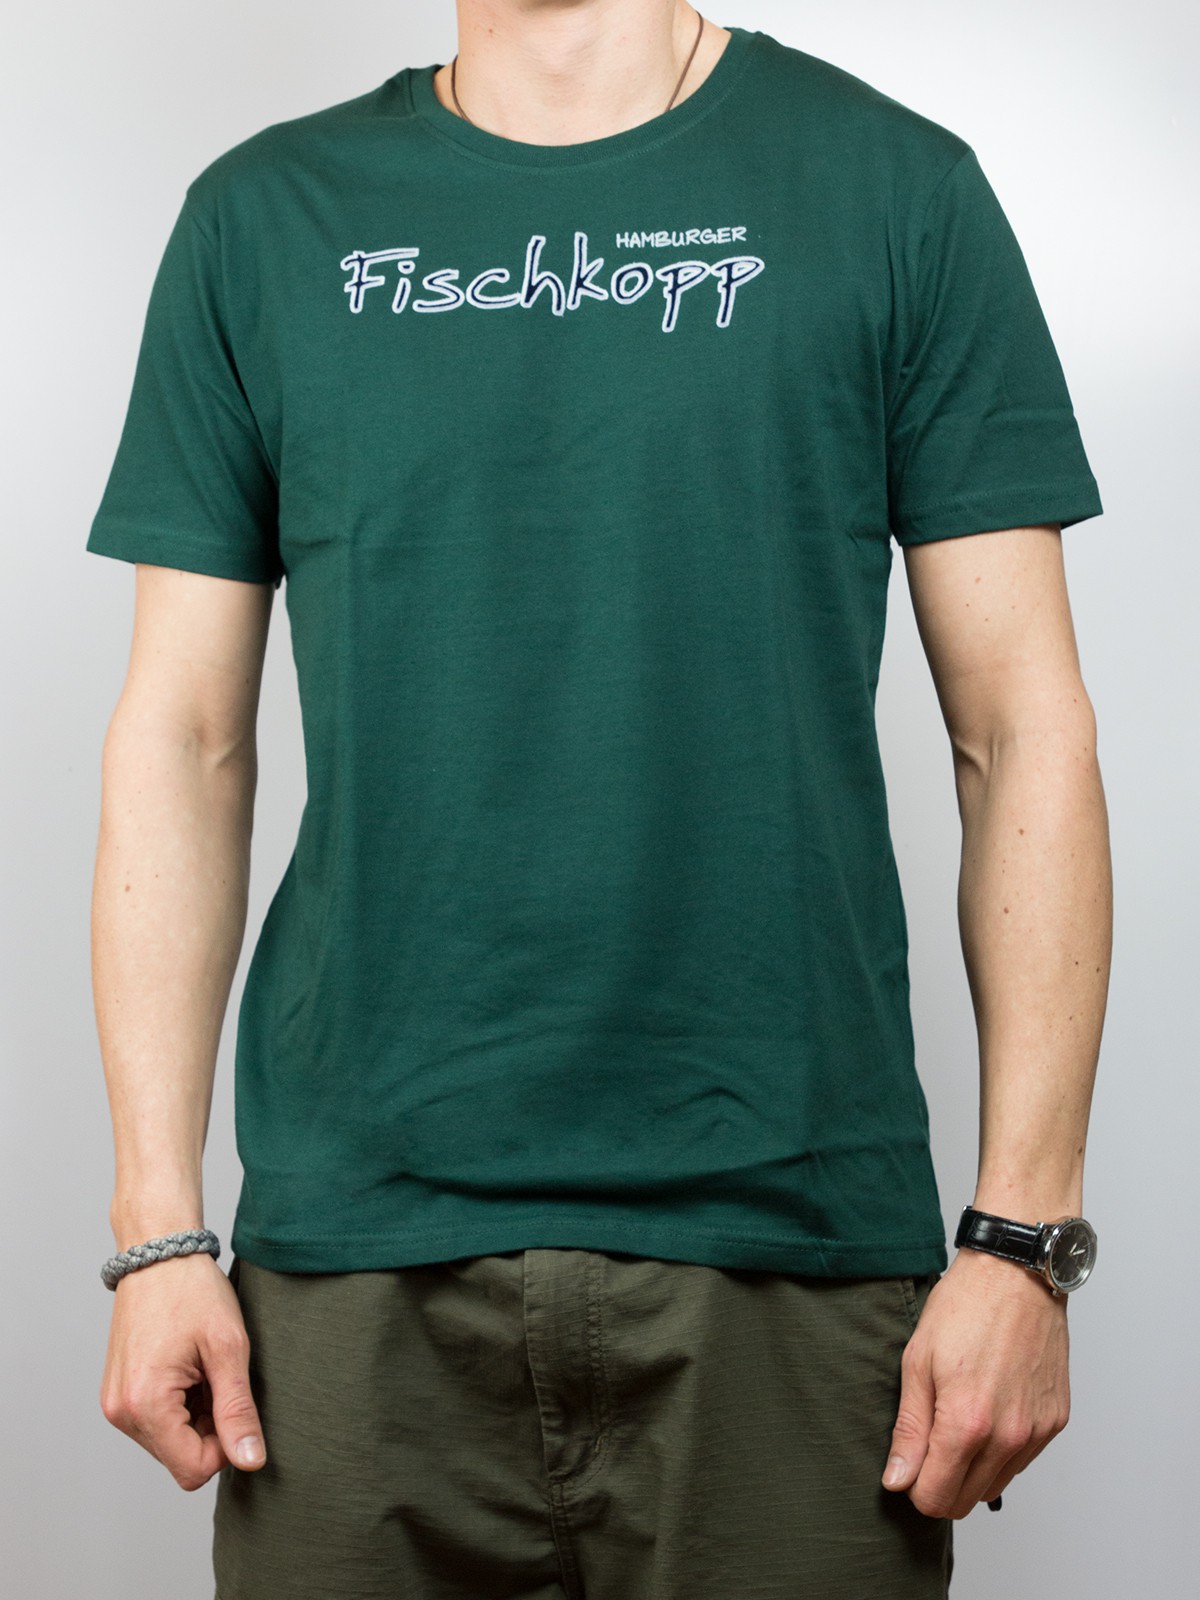 T-Shirt - Hamburger Fischkopp